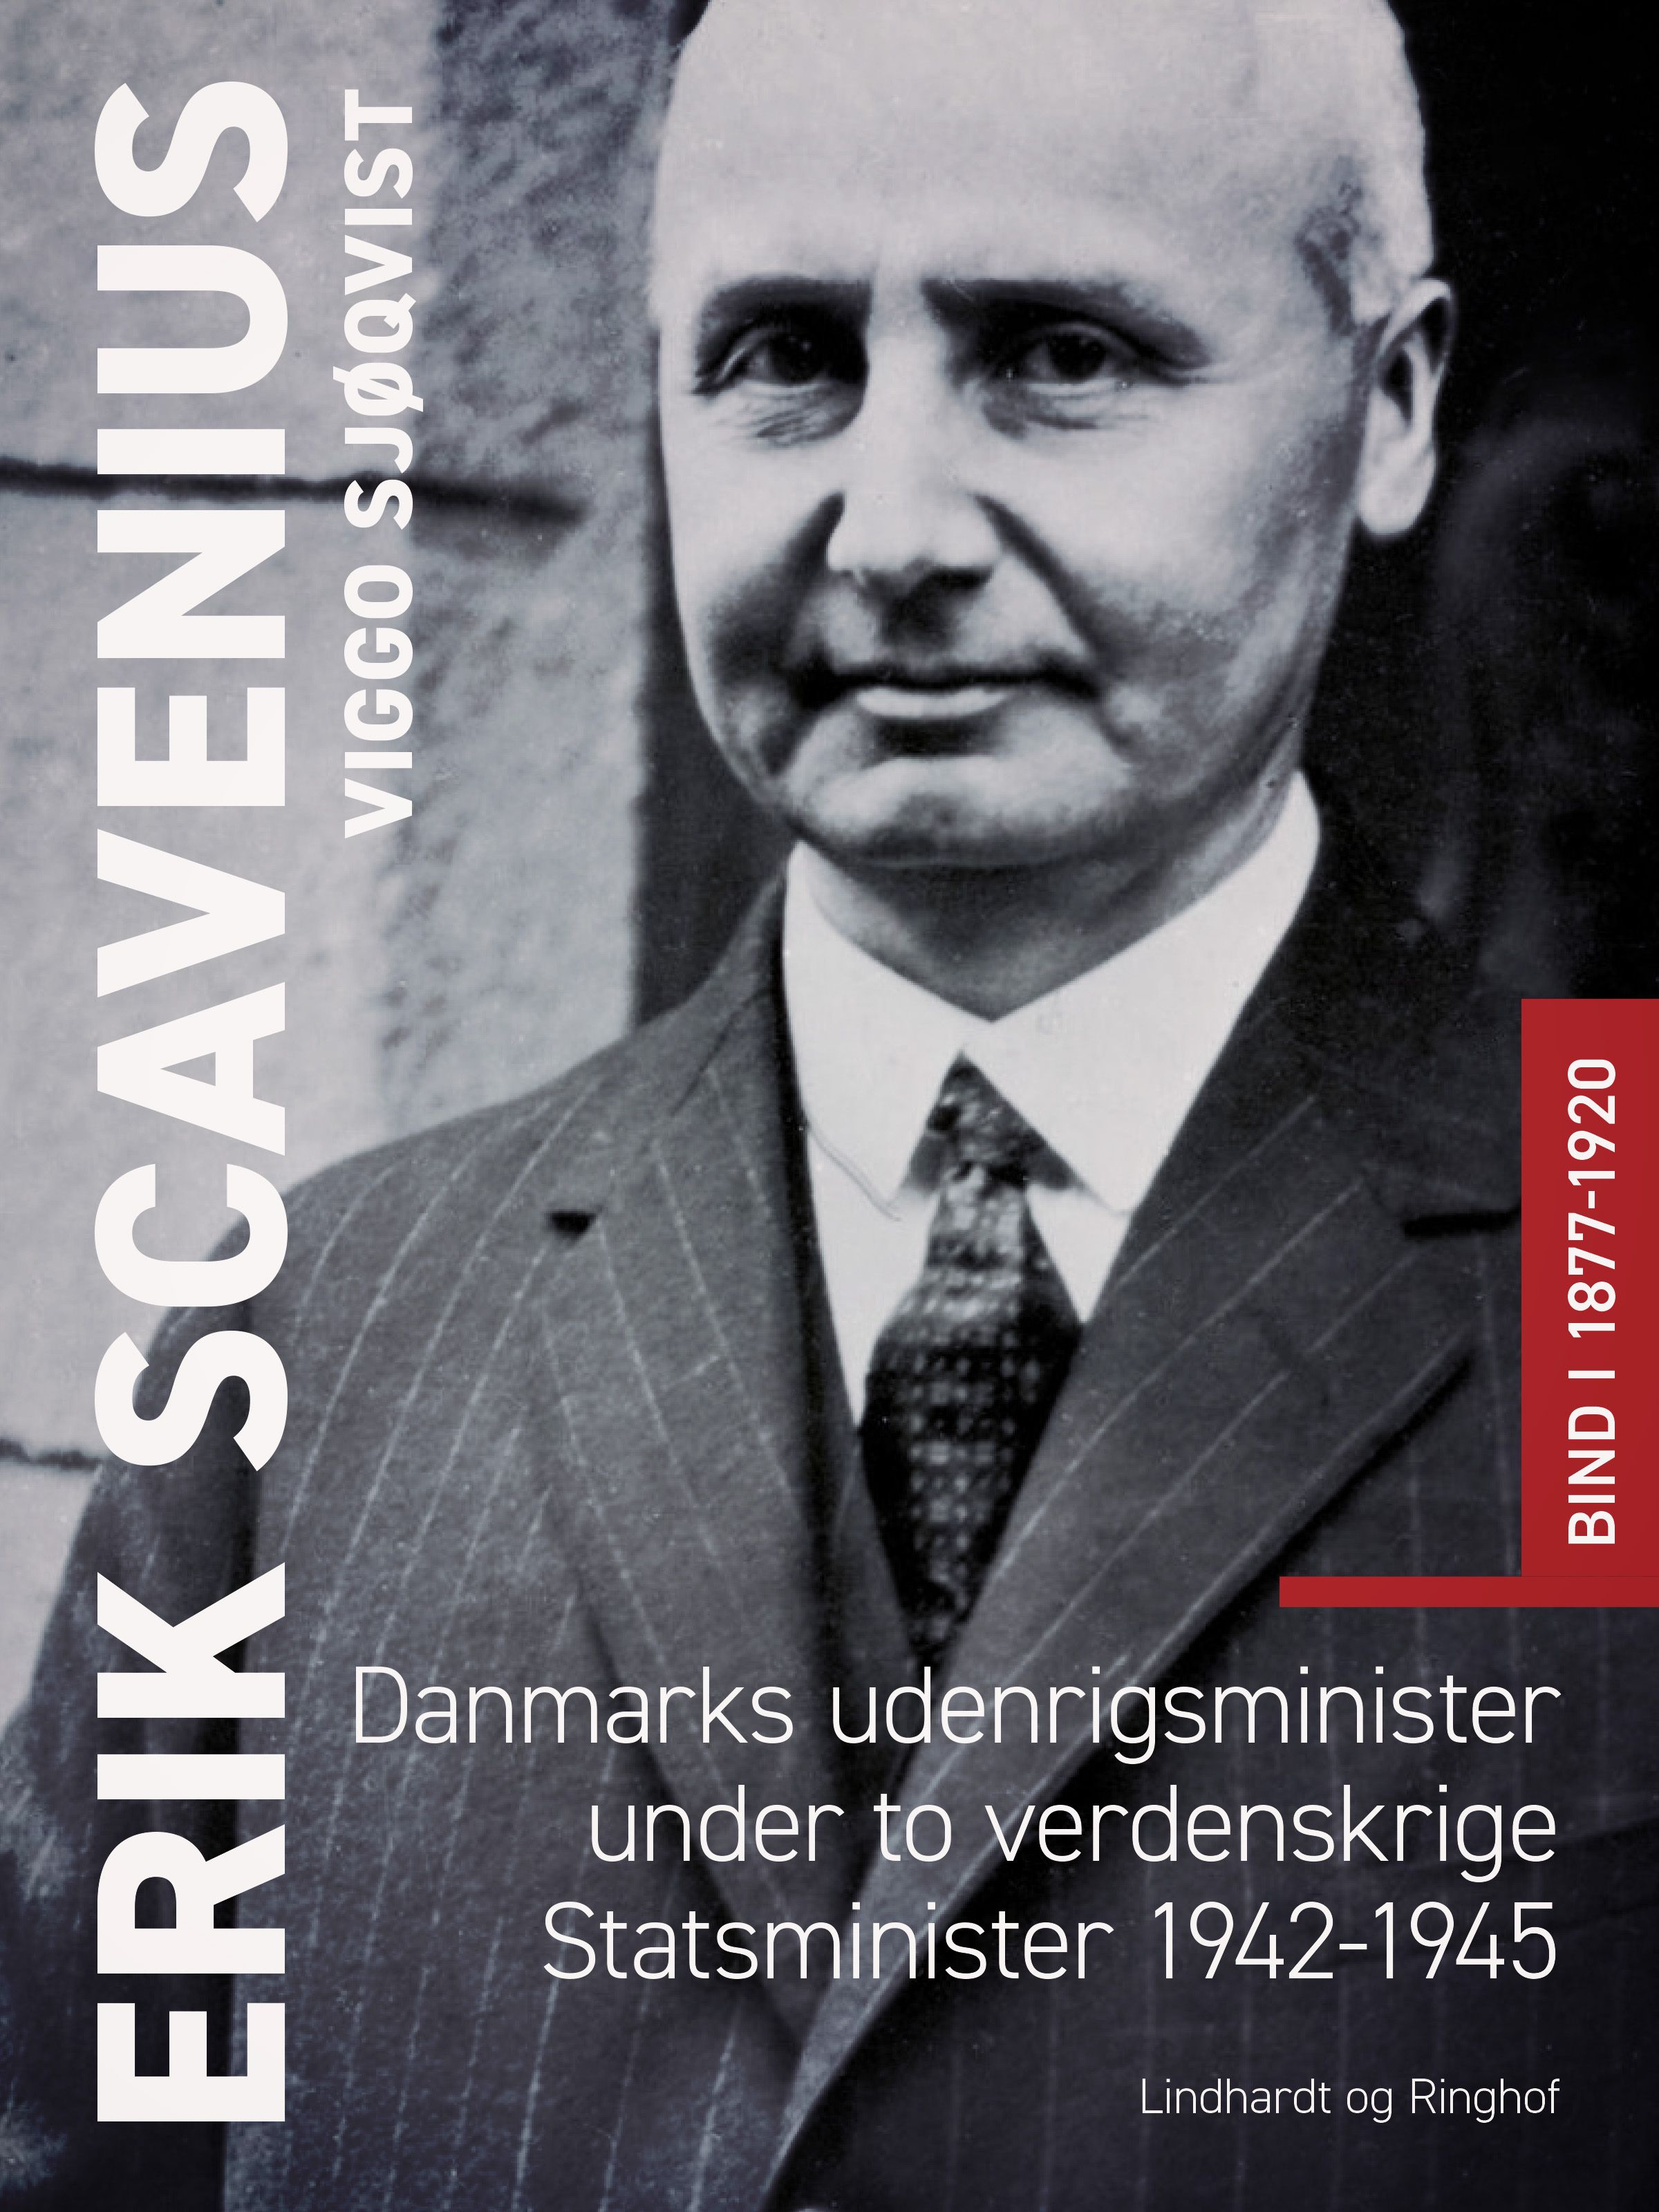 Erik Scavenius. Danmarks udenrigsminister under to verdenskrige. Statsminister 1942-1945. Bind I 1877-1920, e-bog af Viggo Sjøqvist